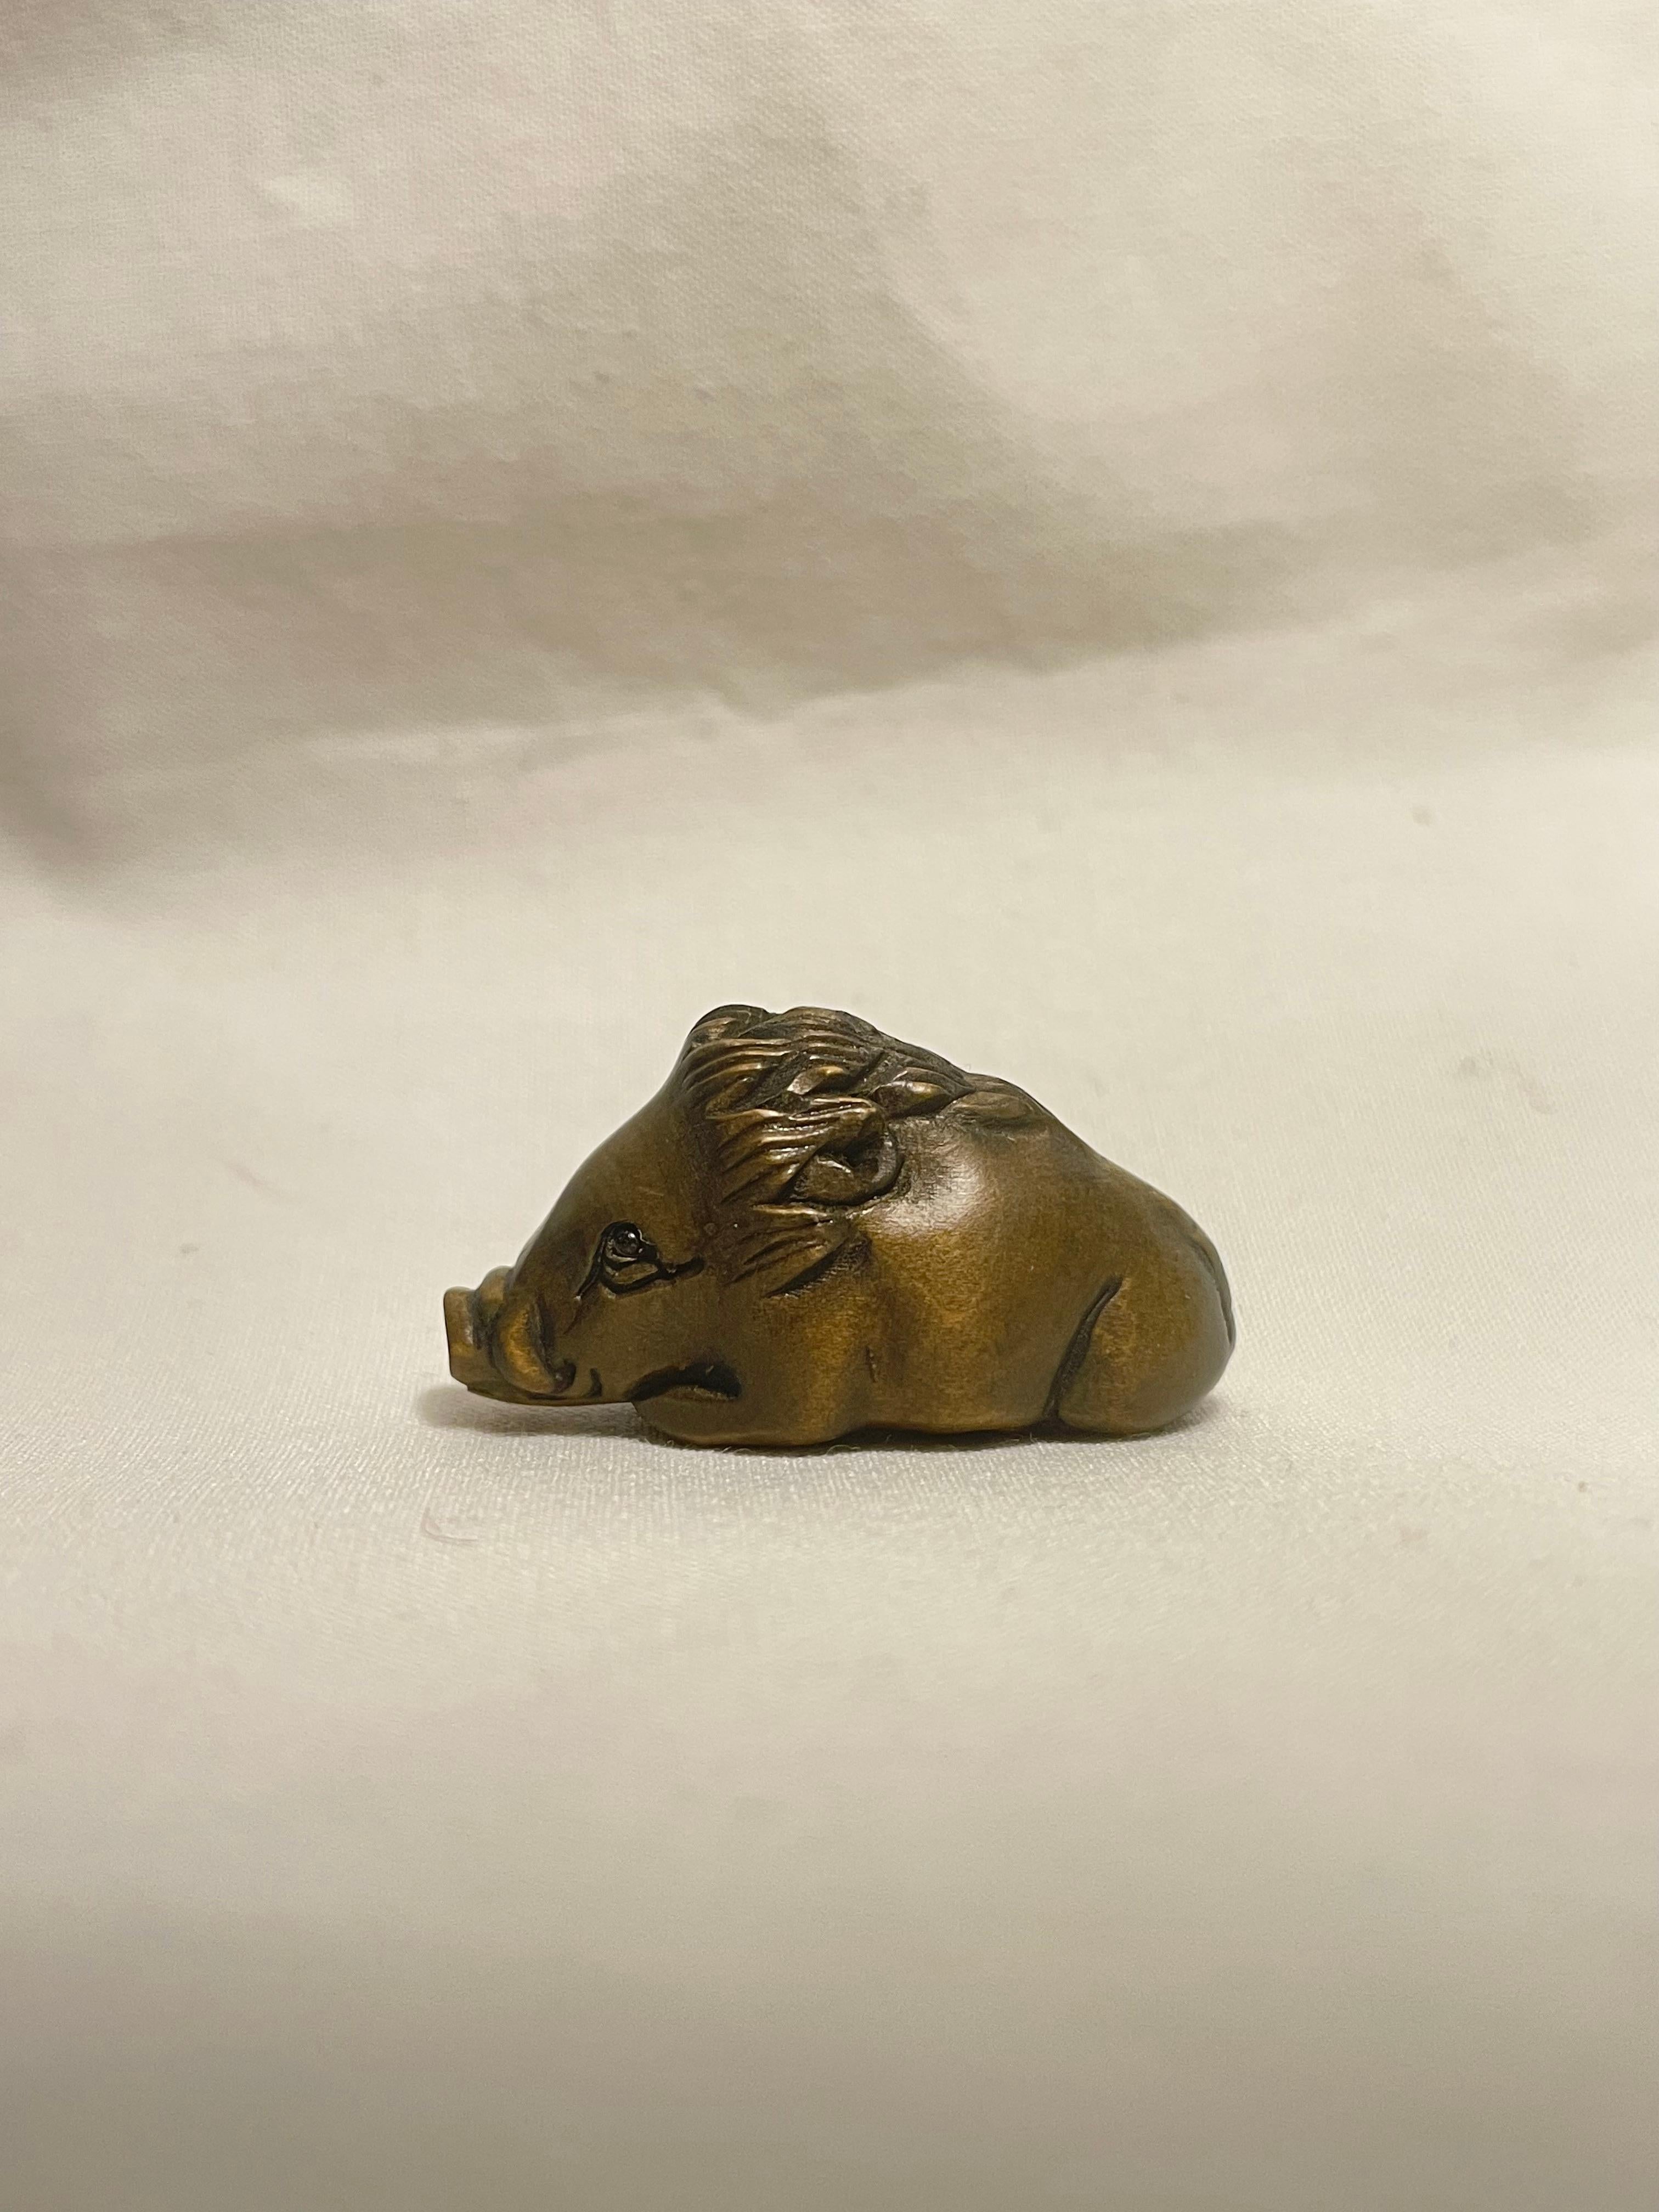 Dies ist ein antikes Netsuke, das in Japan um die Showa-Periode der 1960er Jahre hergestellt wurde.

Abmessungen: 3,5 x 1,5 x H2 cm
Bildhauerei: Wildschwein
Epoche: 1960er Jahre (Showa) 

Netsuke sind Miniaturskulpturen, die ihren Ursprung im Japan